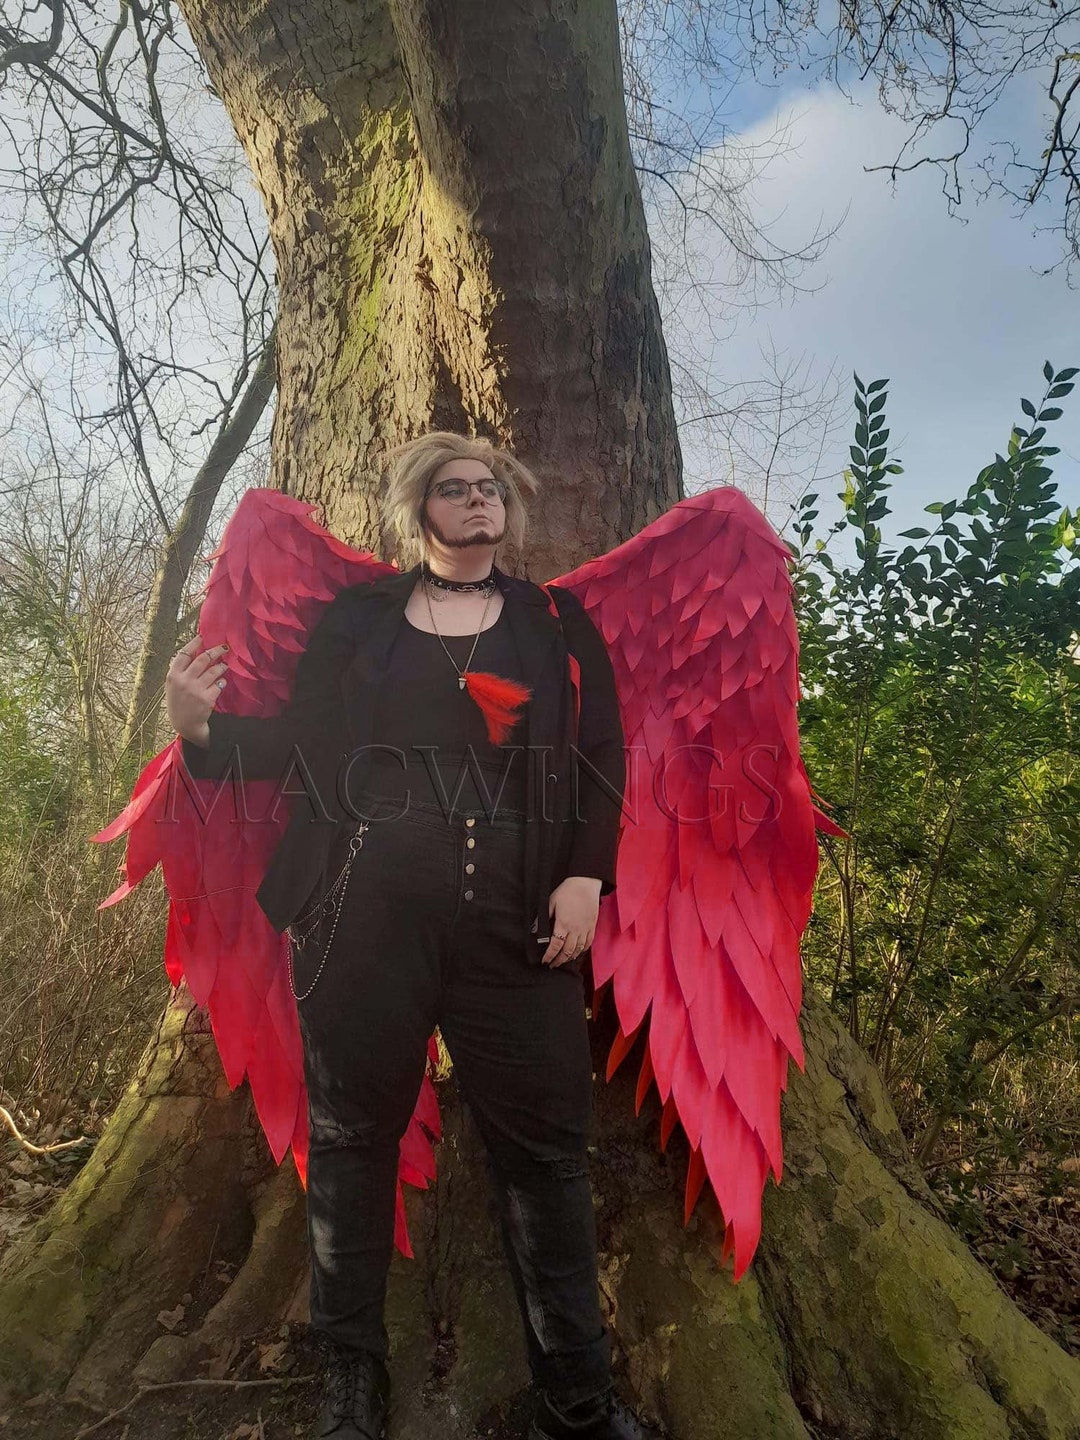 EVA Devil Wings, Red